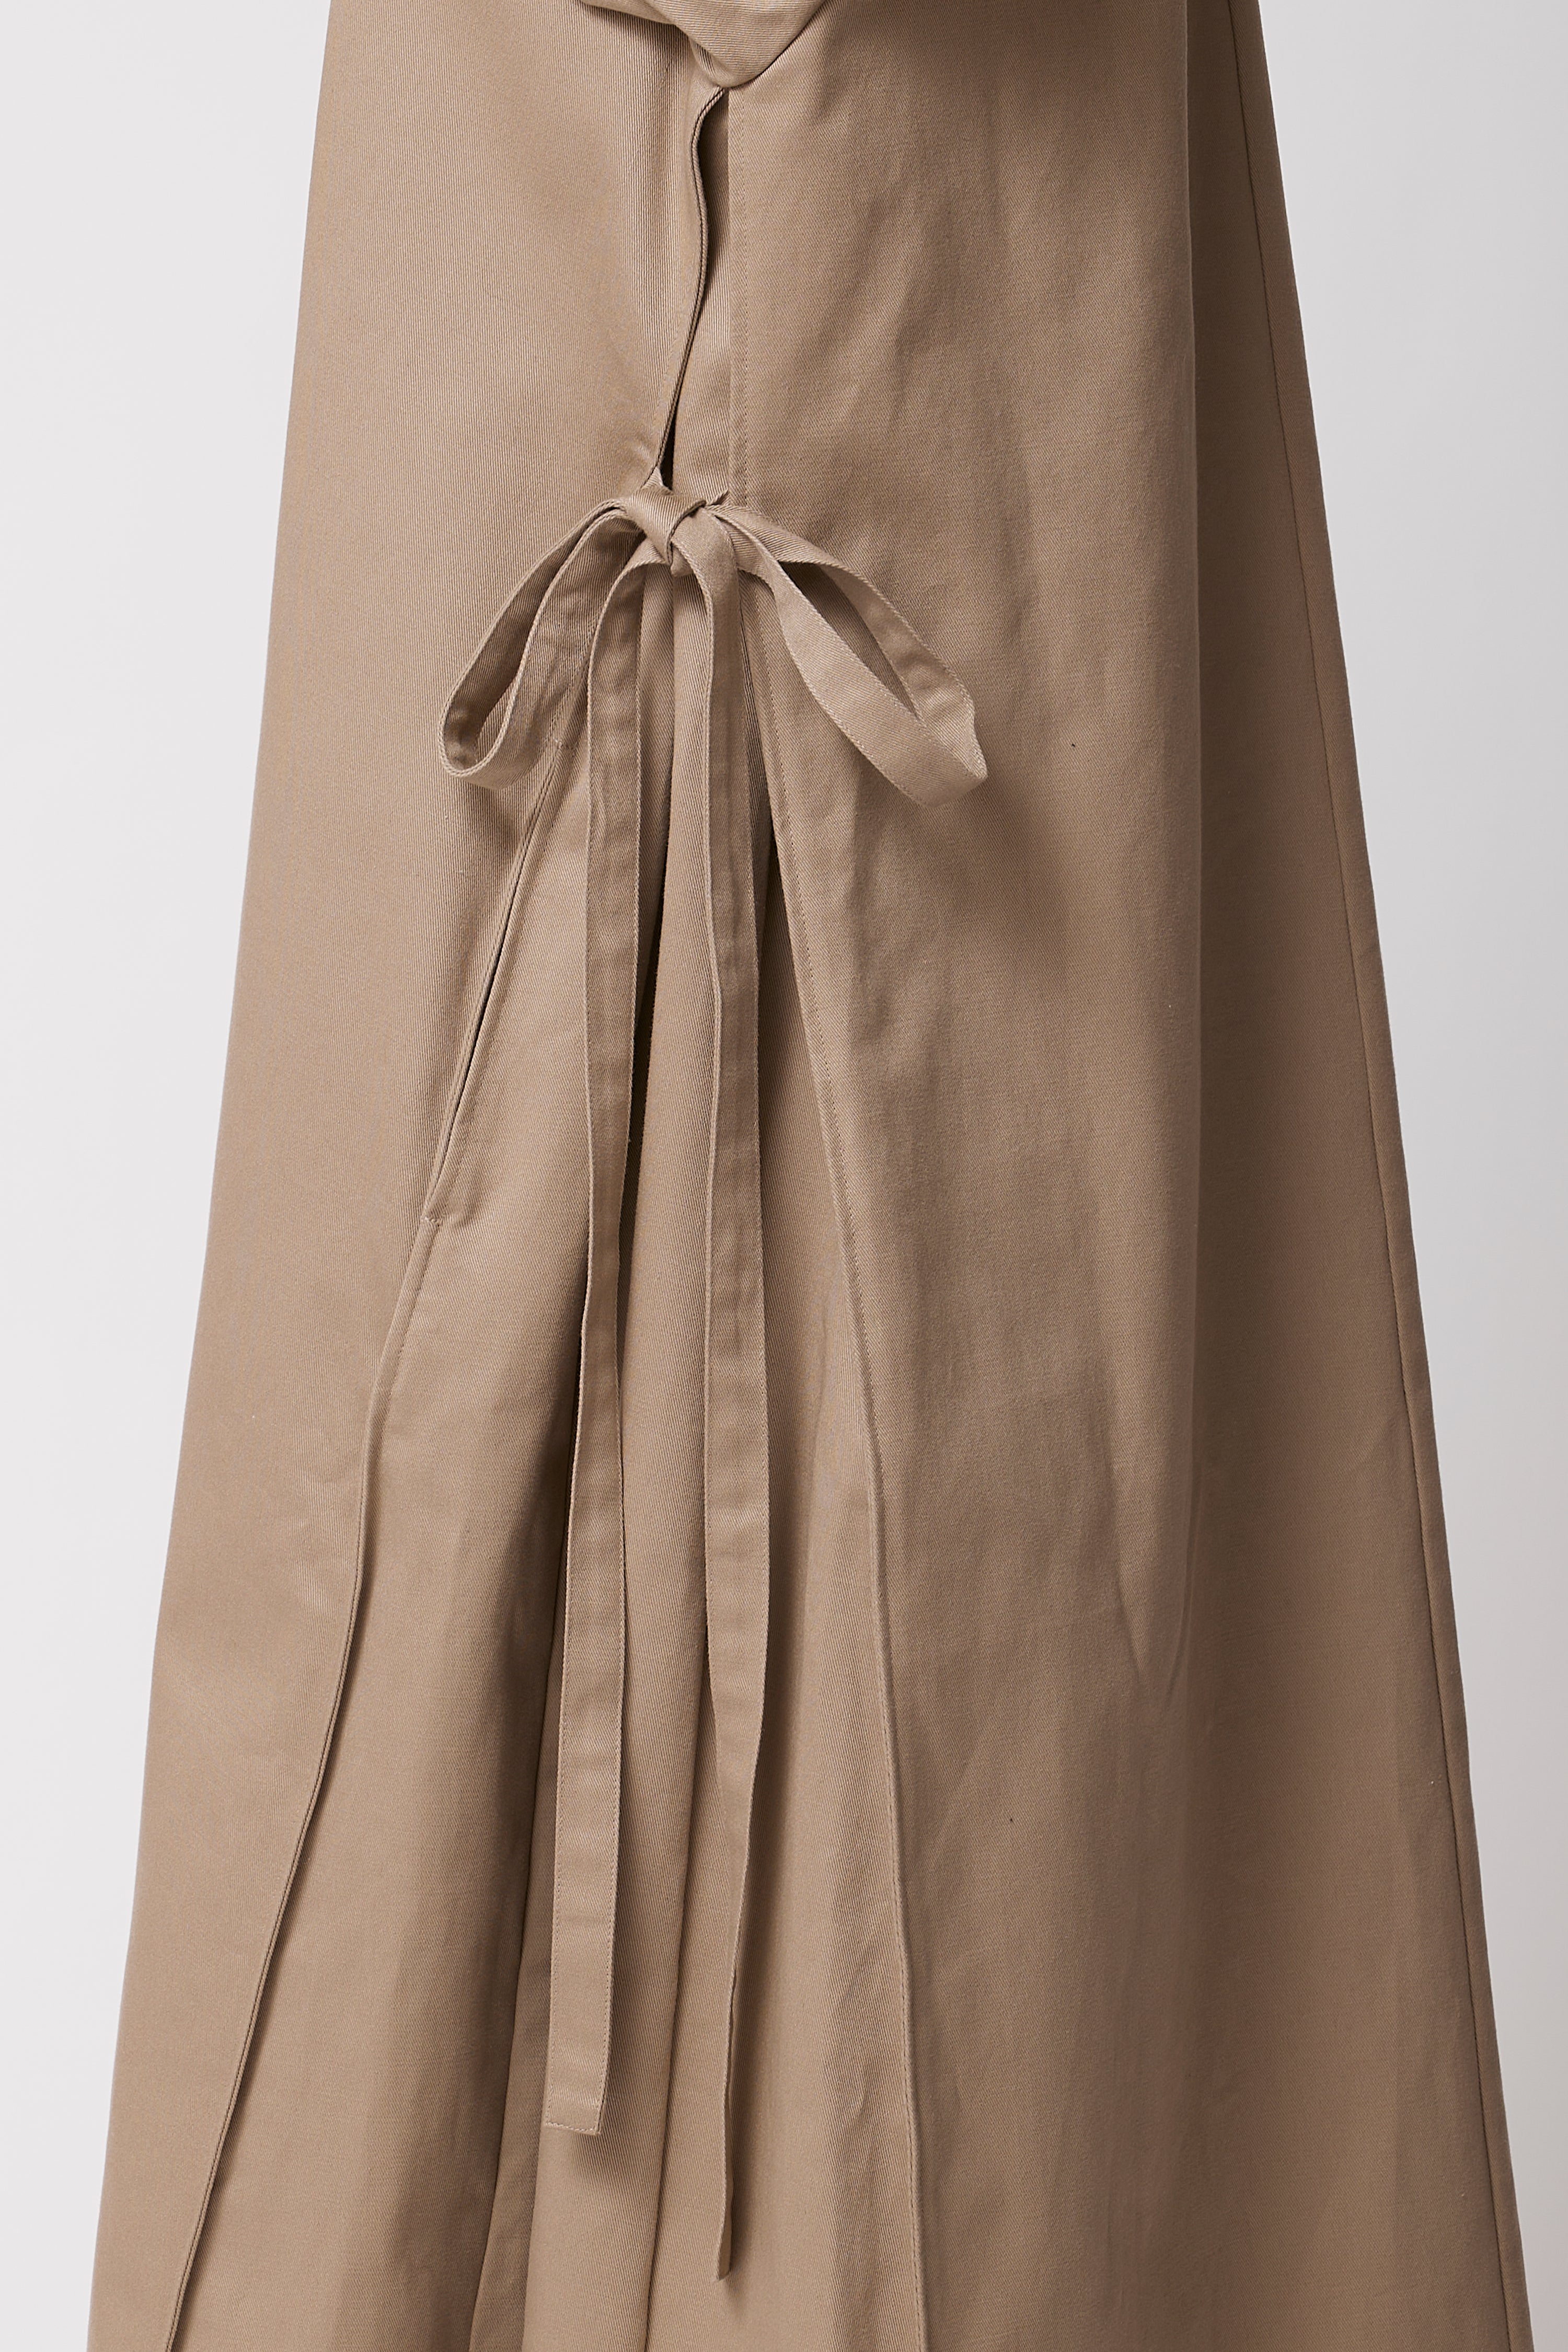 Terra Coat Dress